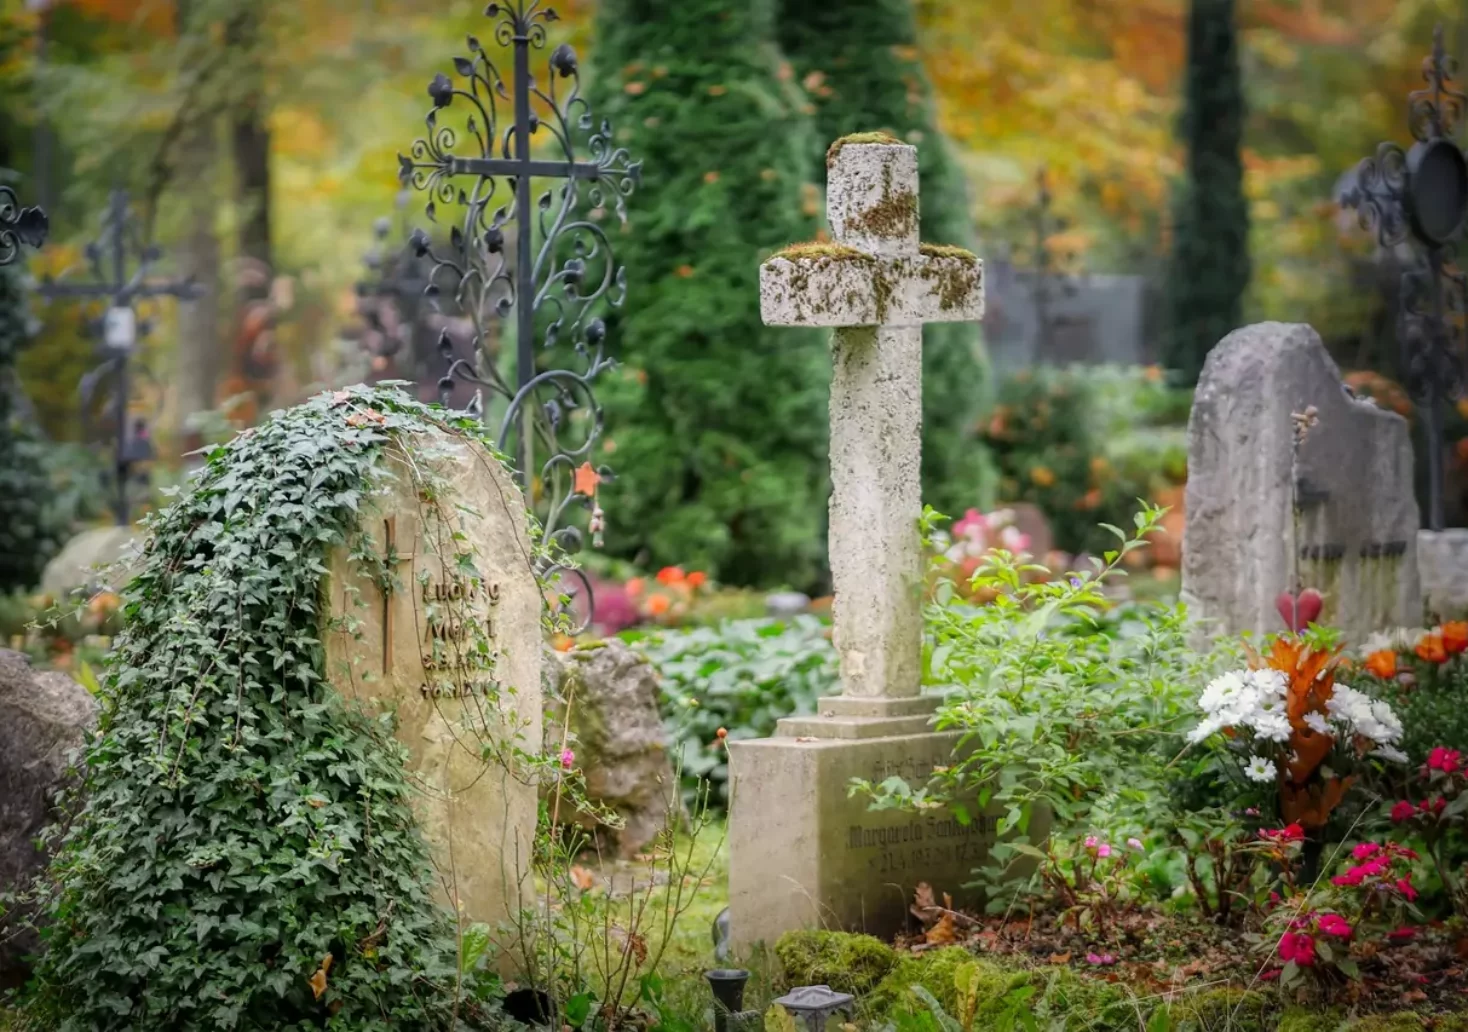 Foto in Beitrag von 5min.at: Zu sehen ist ein Friedhof im Grünen mit einigen Kreuzen.